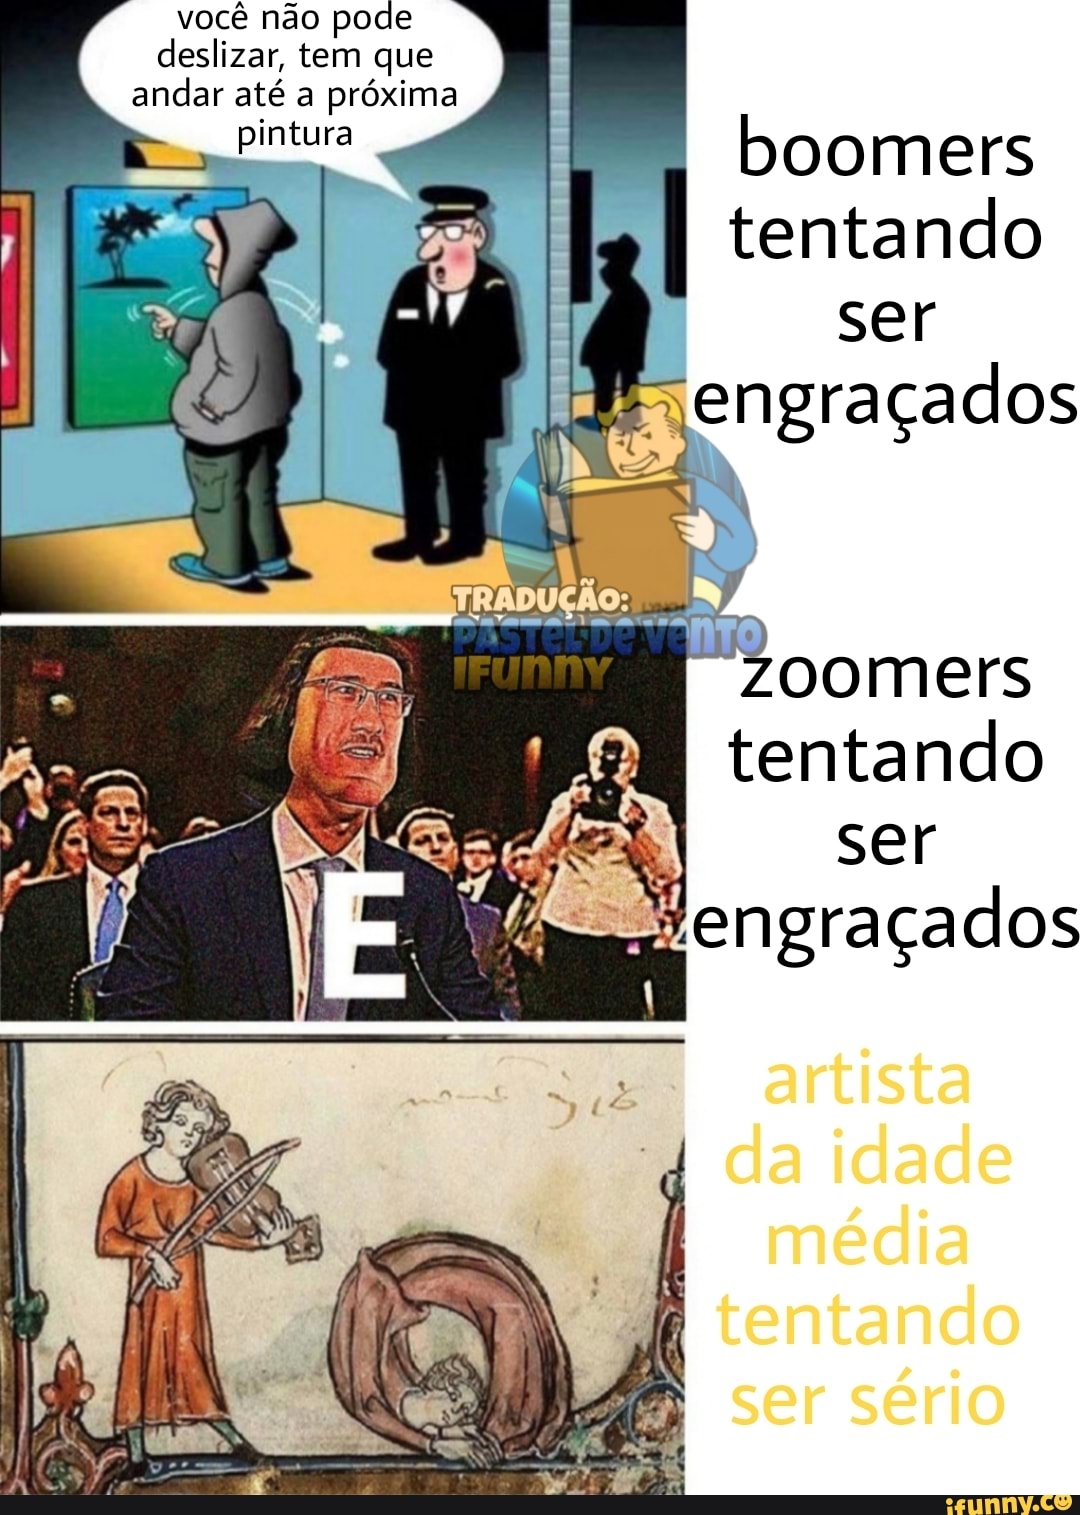 Ander memes 10 - . . . . #memesbrasil #meme #humor #risos